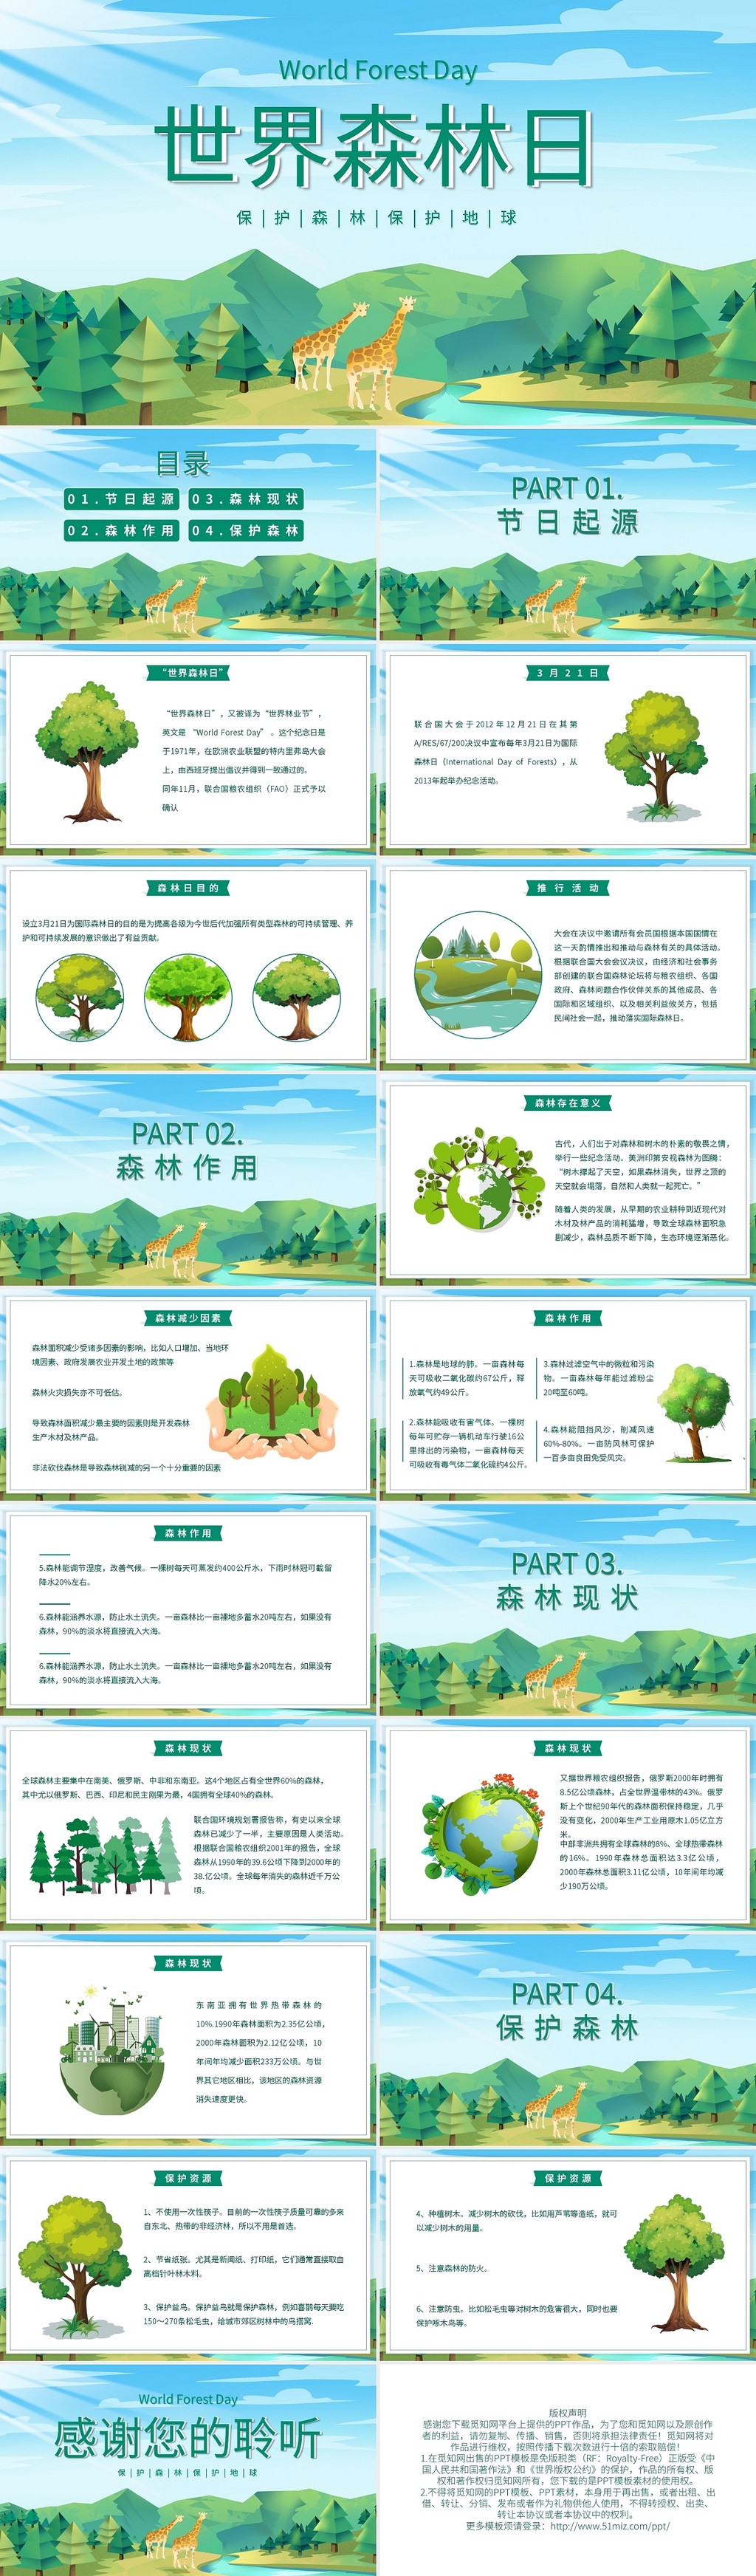 简约世界森林日PPT模板宣传PPT动态PPT